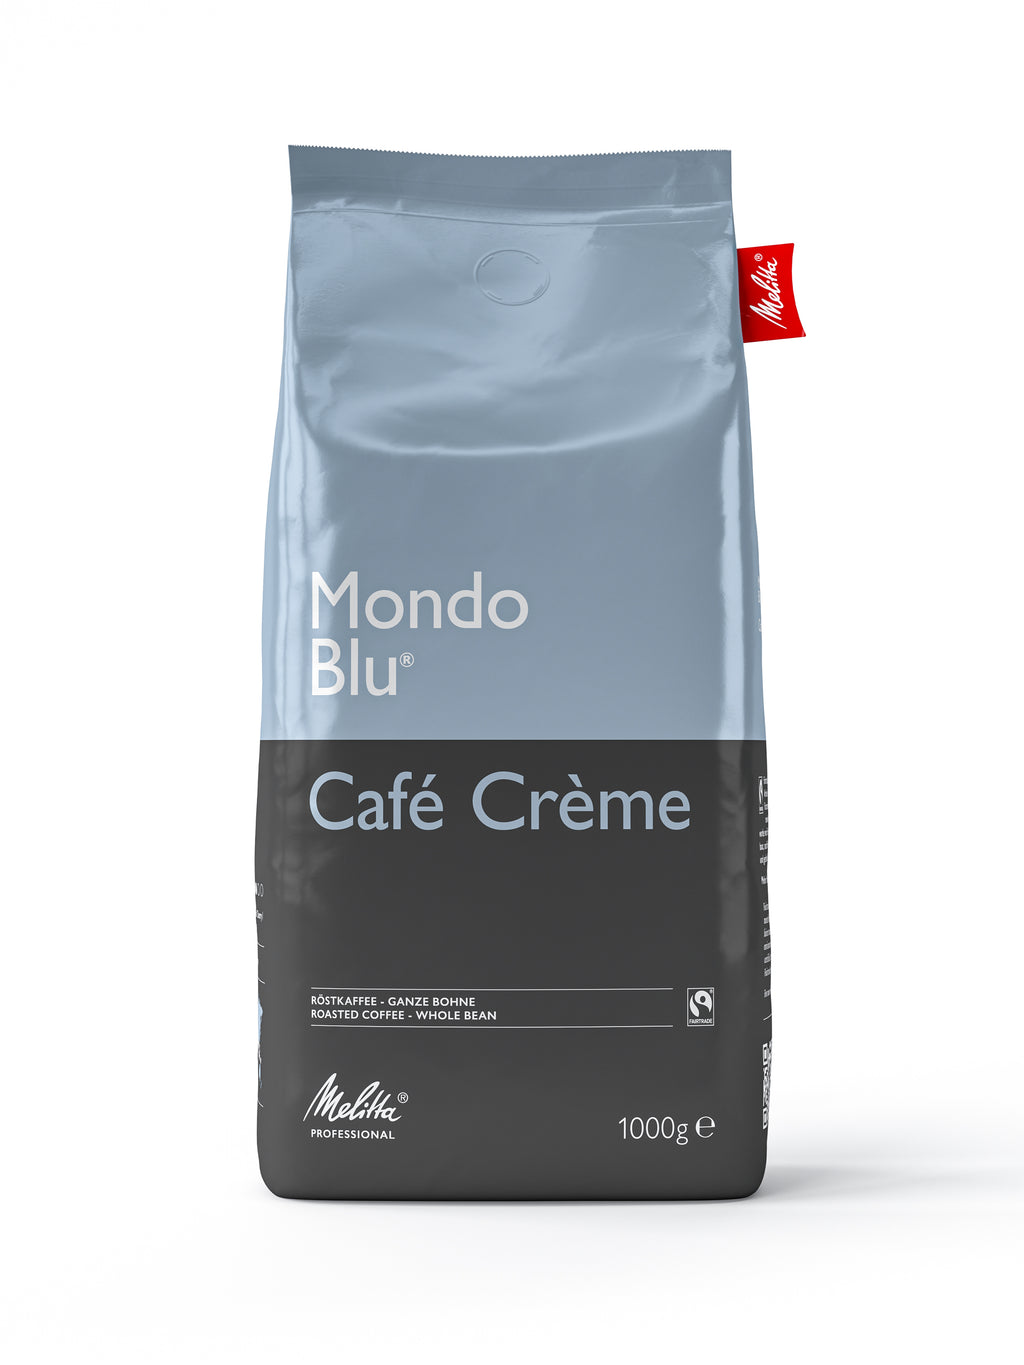 Melitta® Mondo Blu® Café Crème 1000g